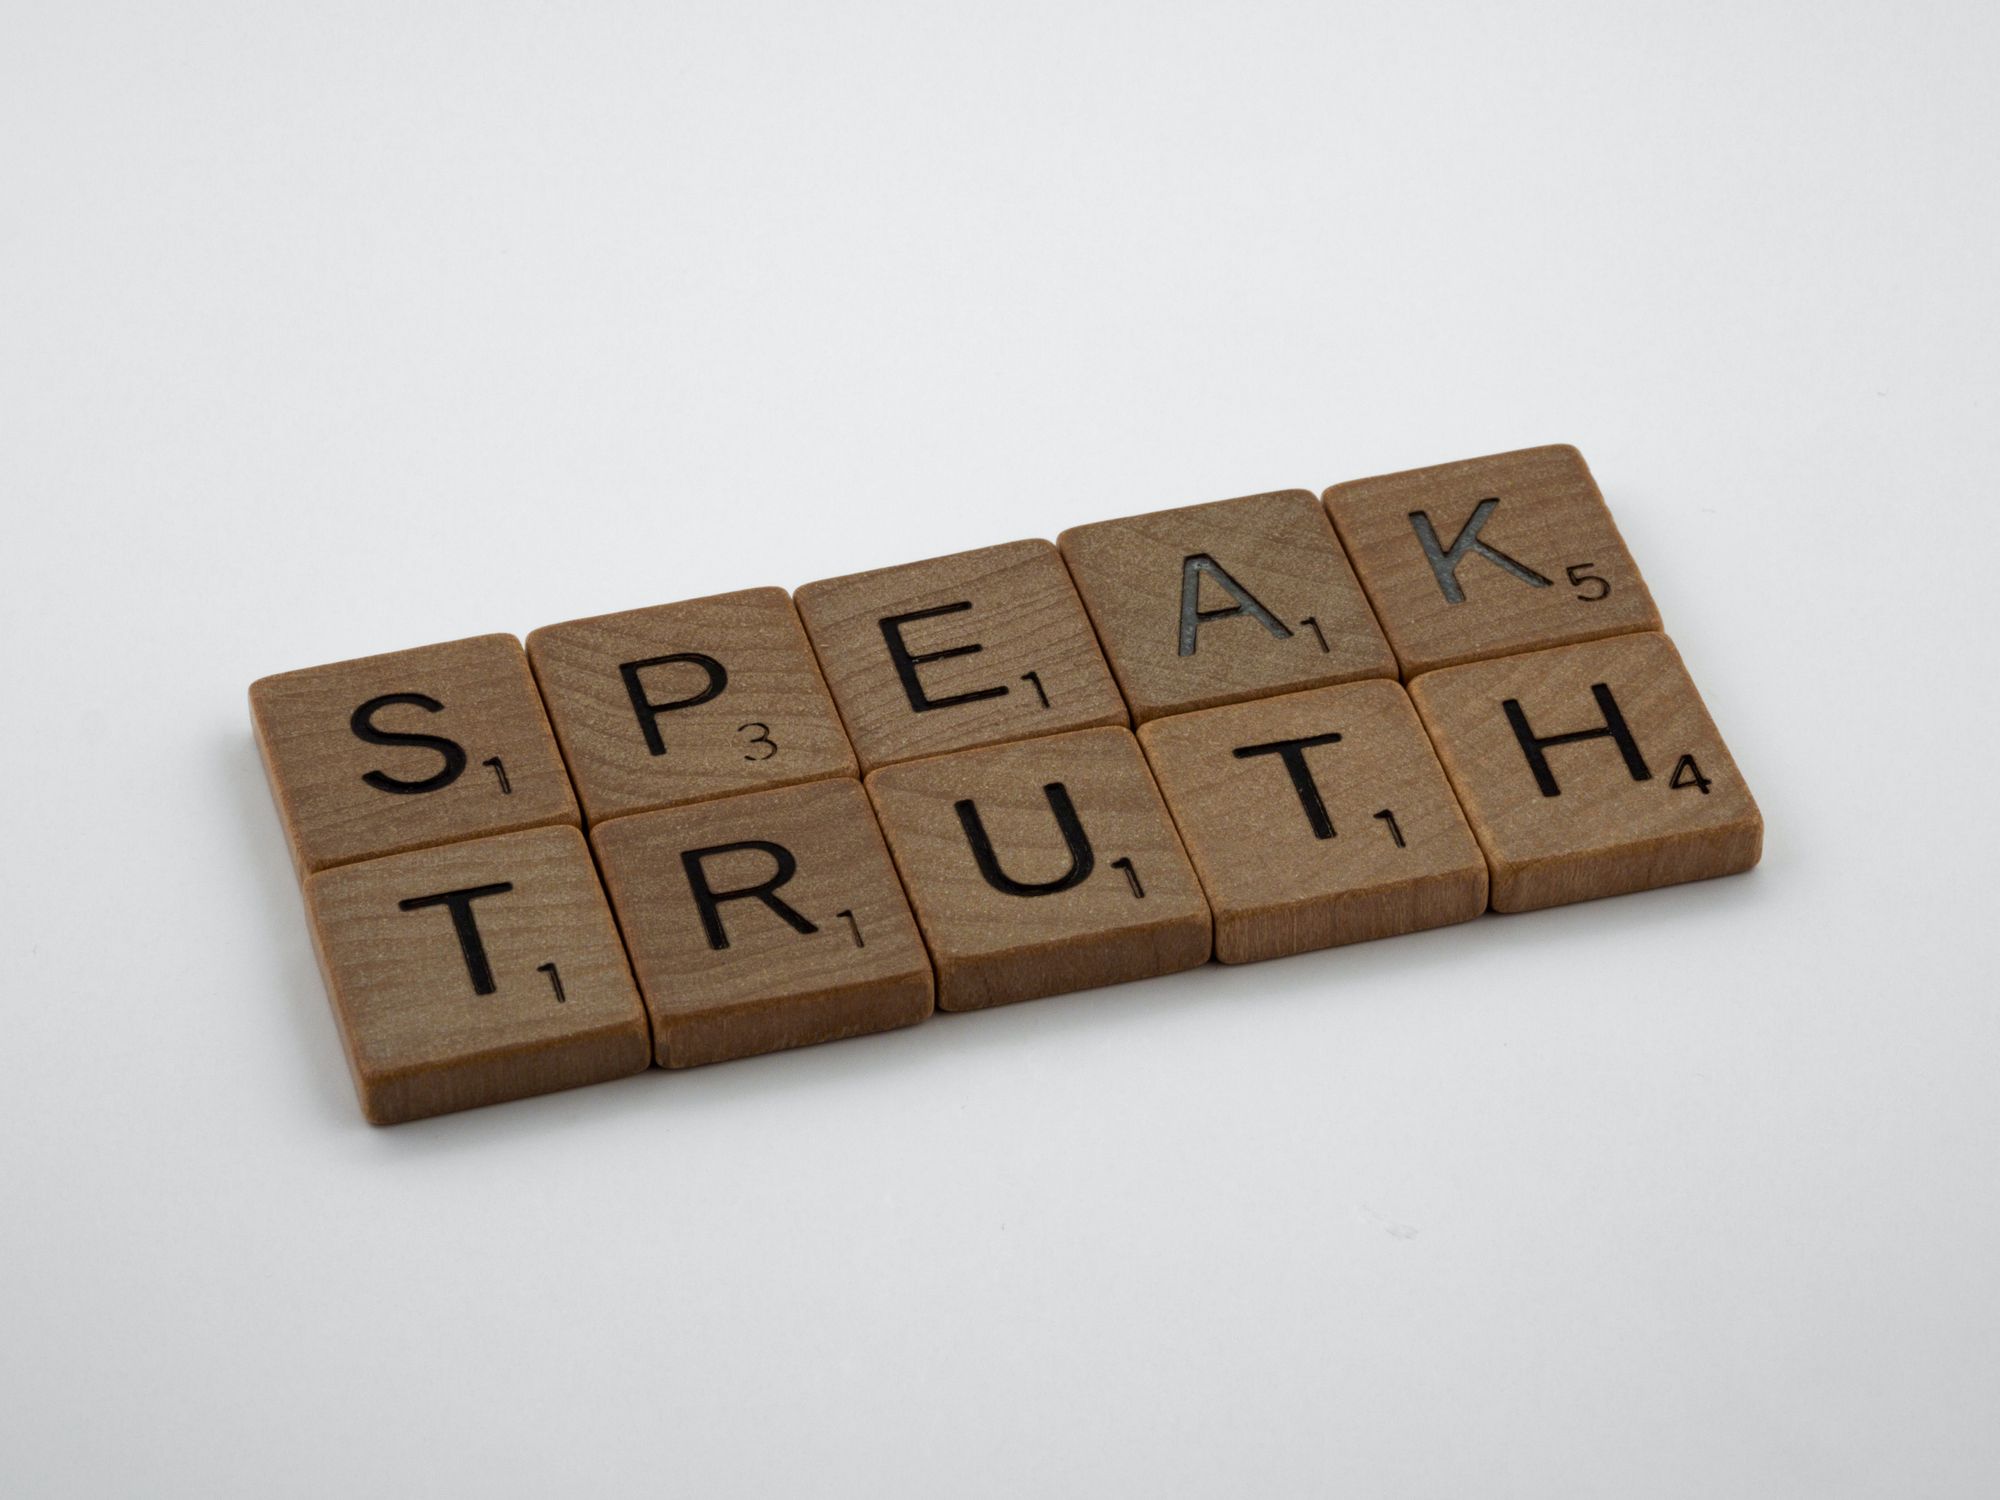 Speak truth, lie not, teach verity.